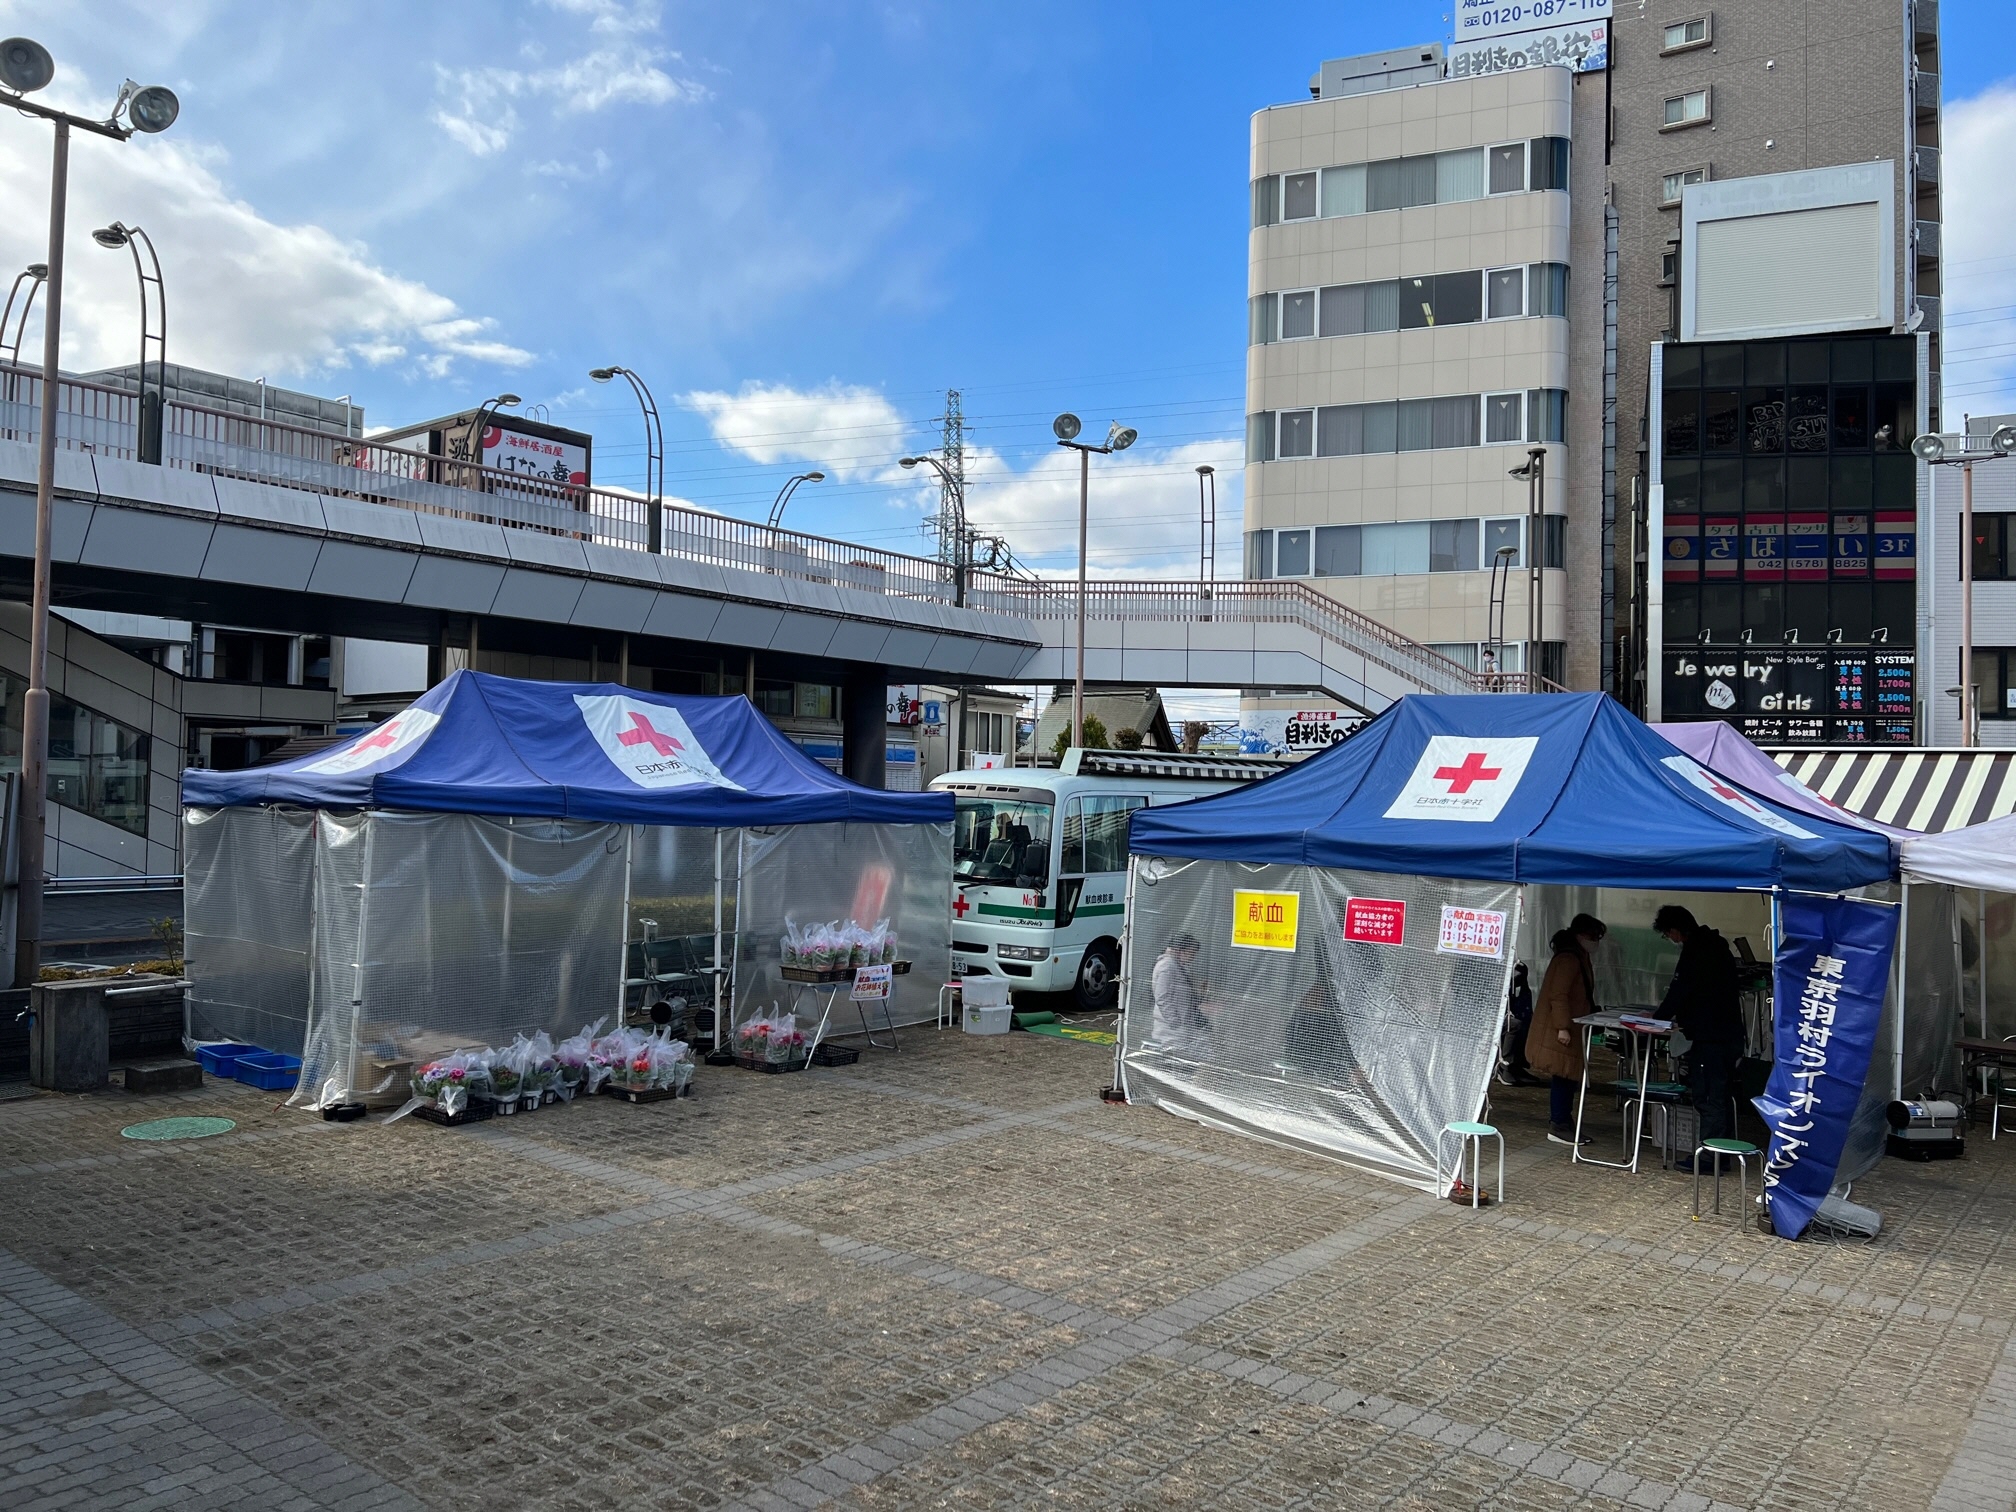 「第32回羽村市献血キャンペーン2」の様子